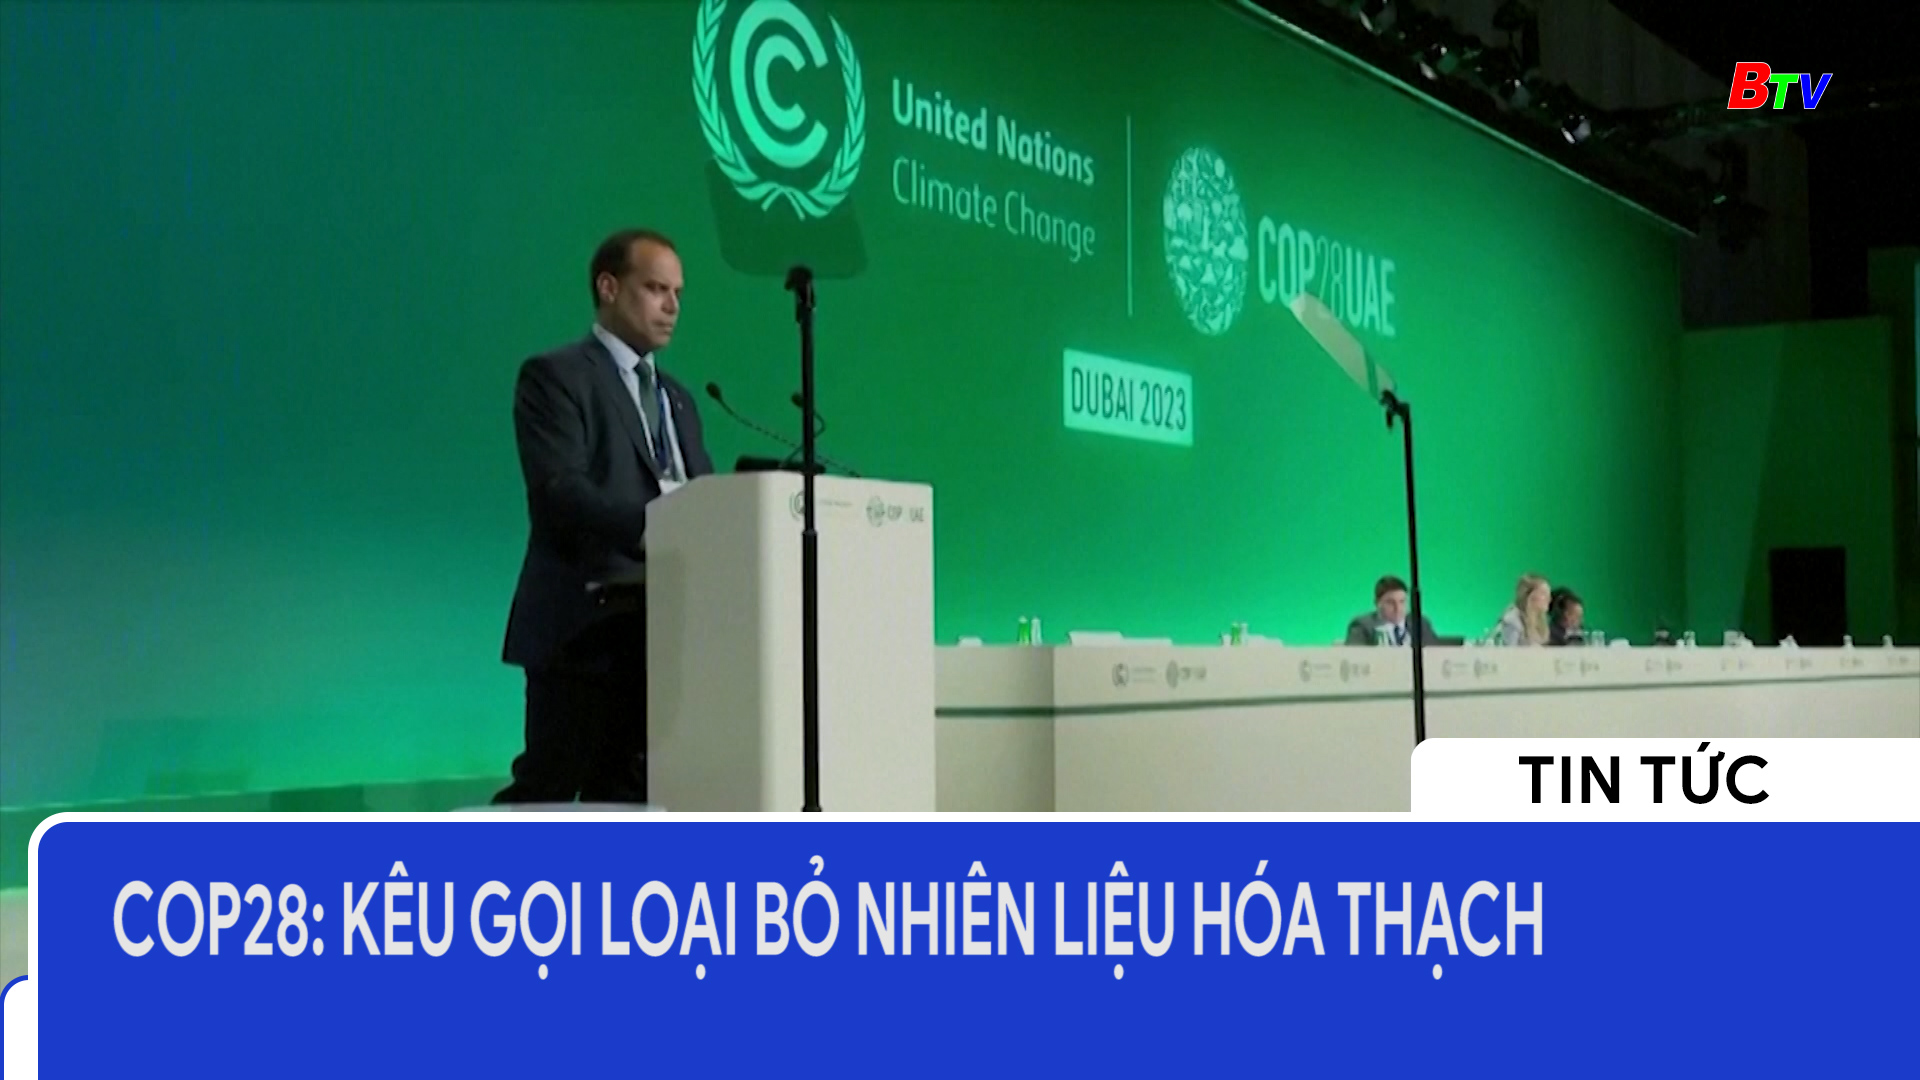 COP28: Kêu gọi loại bỏ nhiên liệu hóa thạch